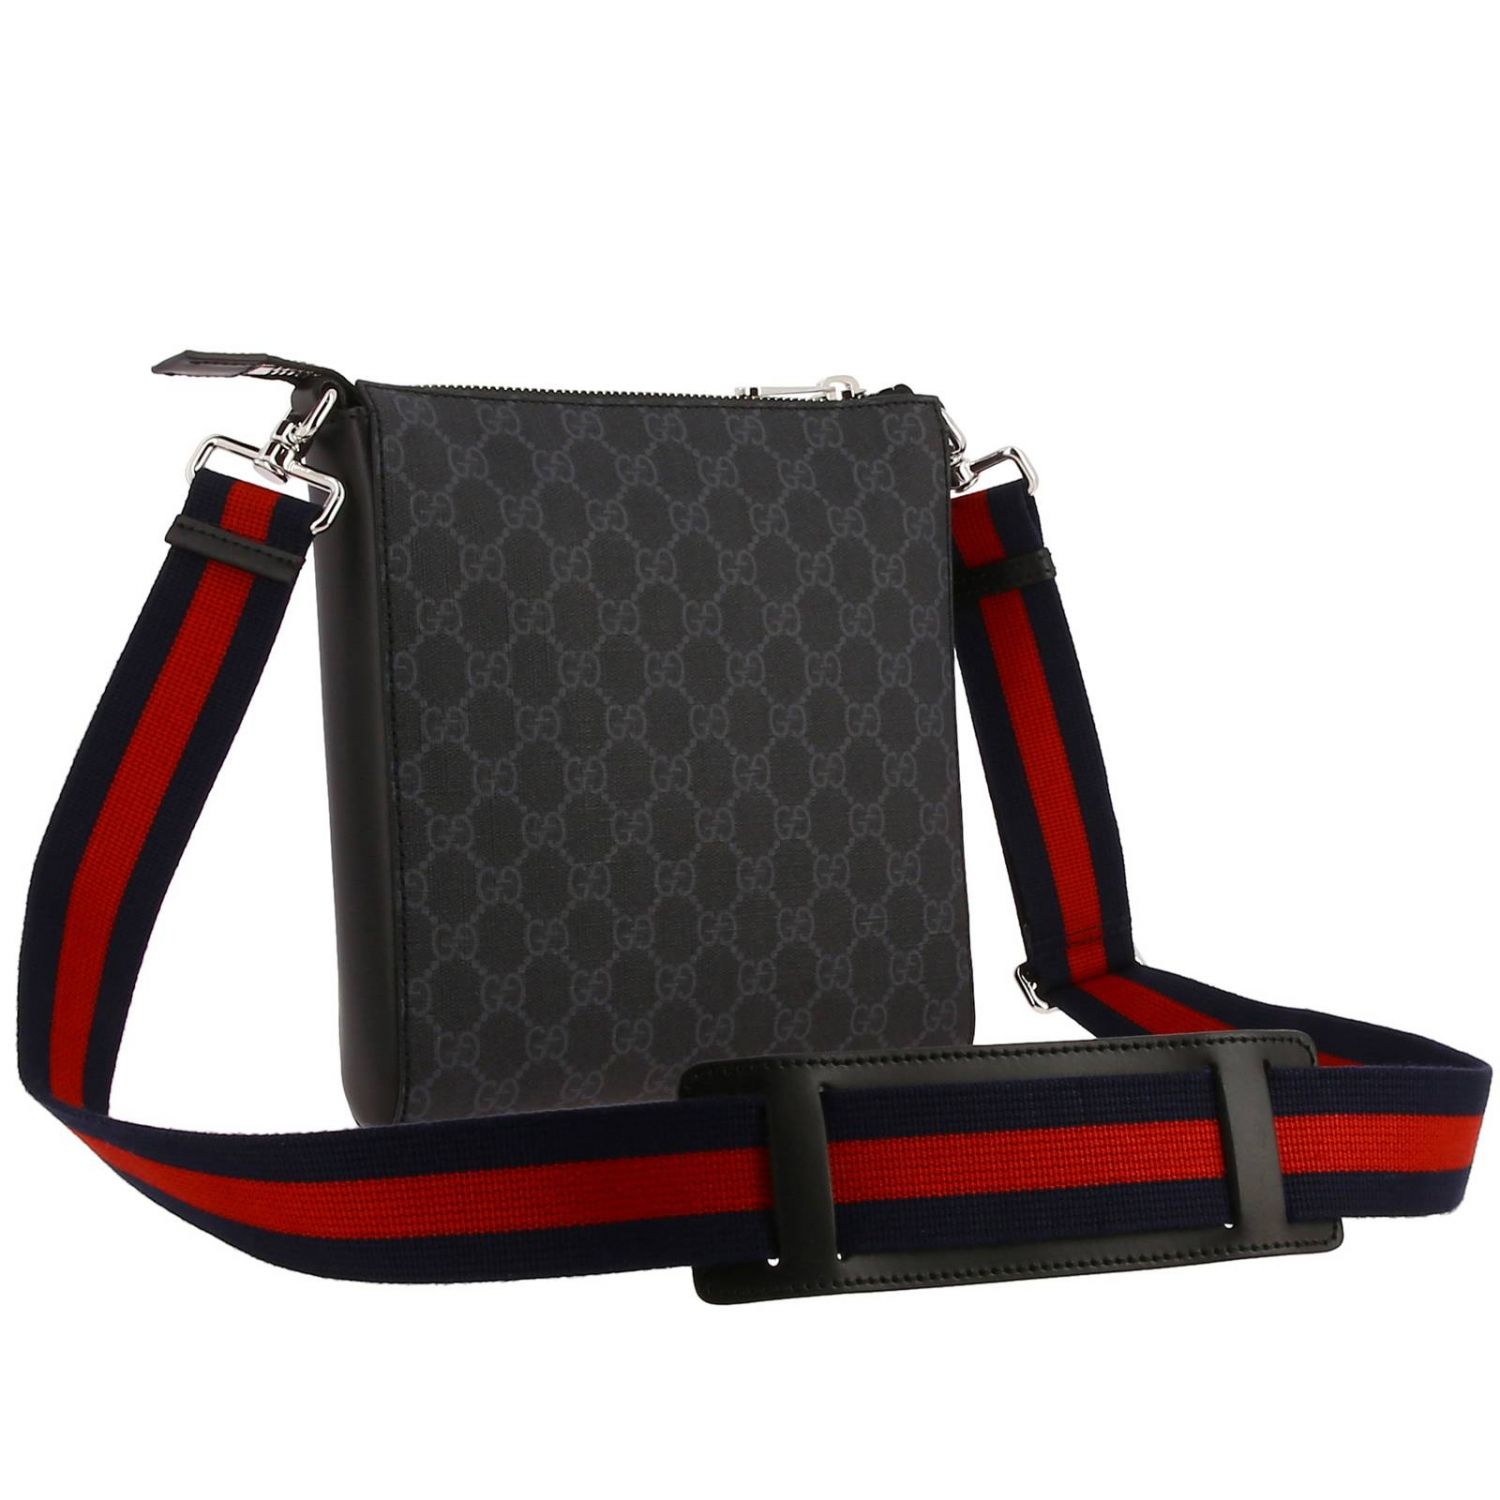 GUCCI: GG Supreme leather bag with Web shoulder strap | Shoulder Bag